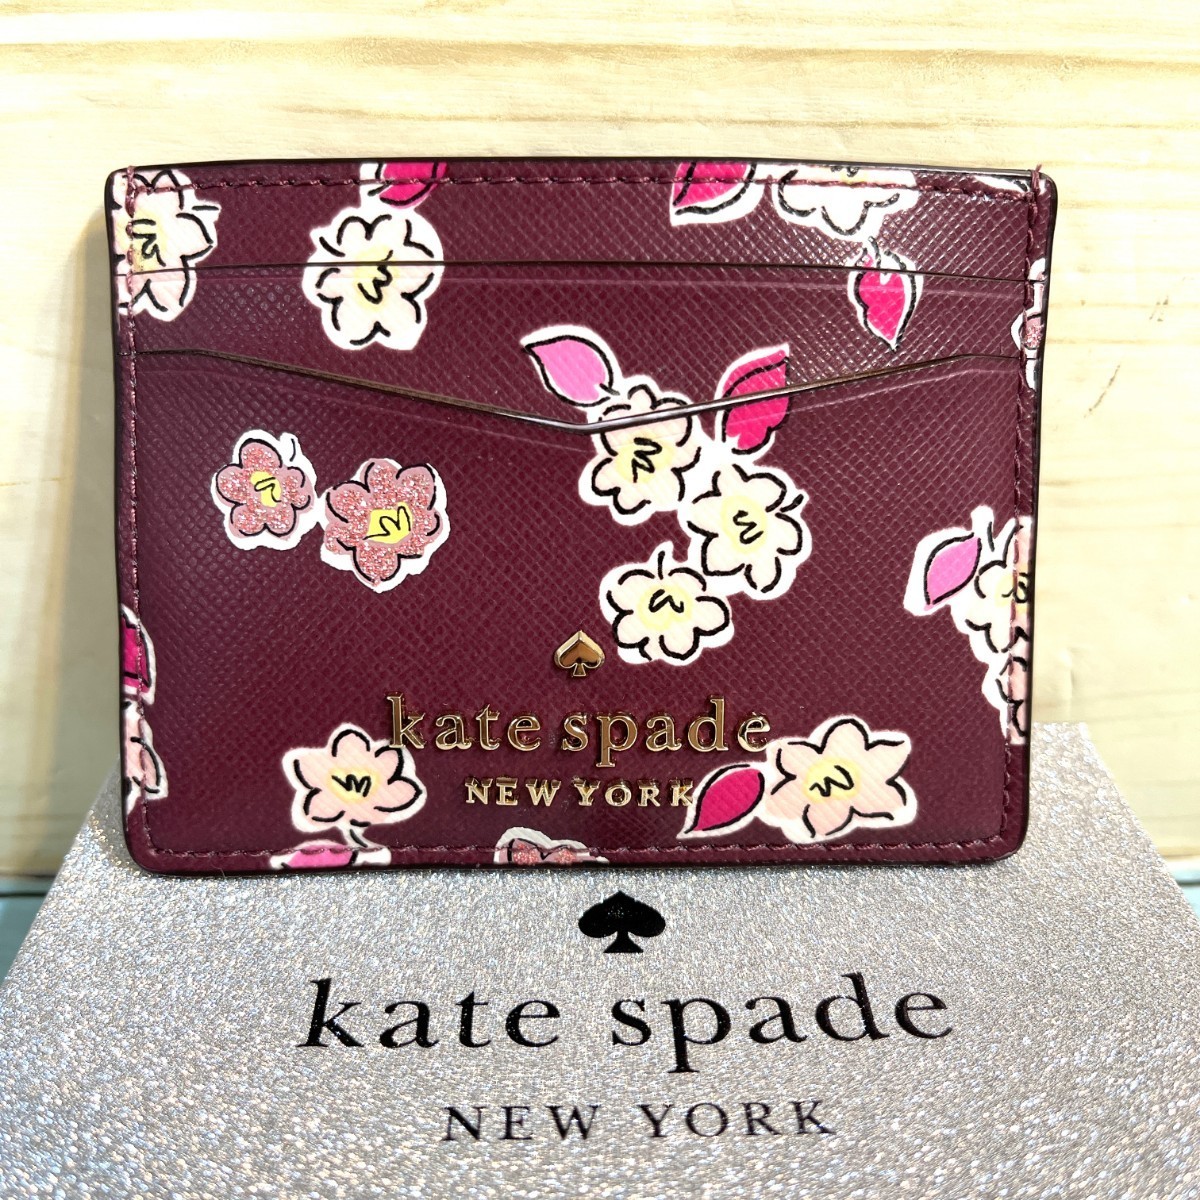 有名なブランド KATE ケイトスペード SPADE フラワー 花柄 ワイン